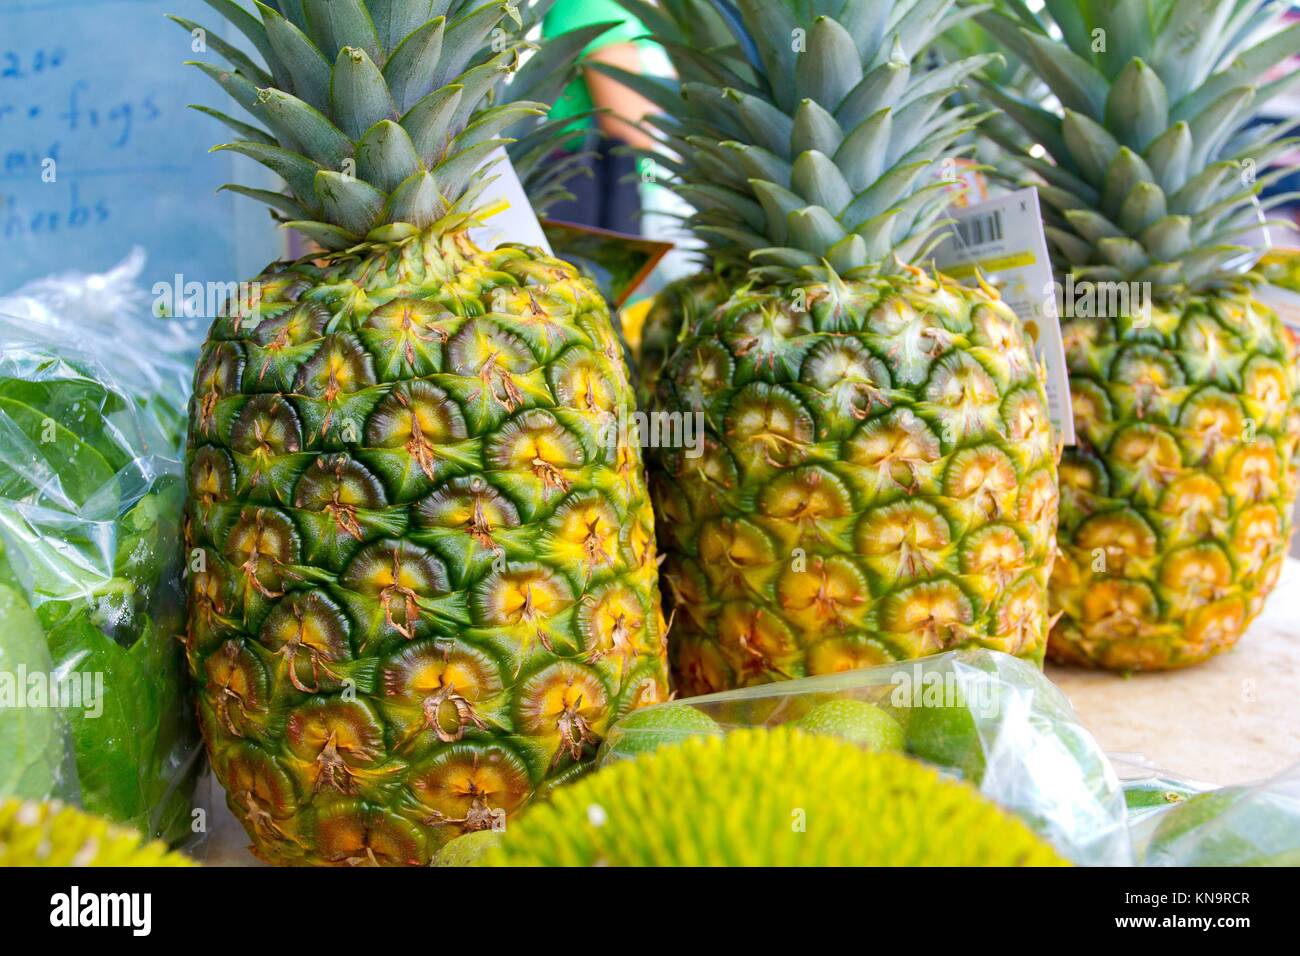 Imágenes de un mercado de granjeros en Hawaii mostrando las frutas tropicales o verduras en simple fotos con colores vibrantes. Foto de stock